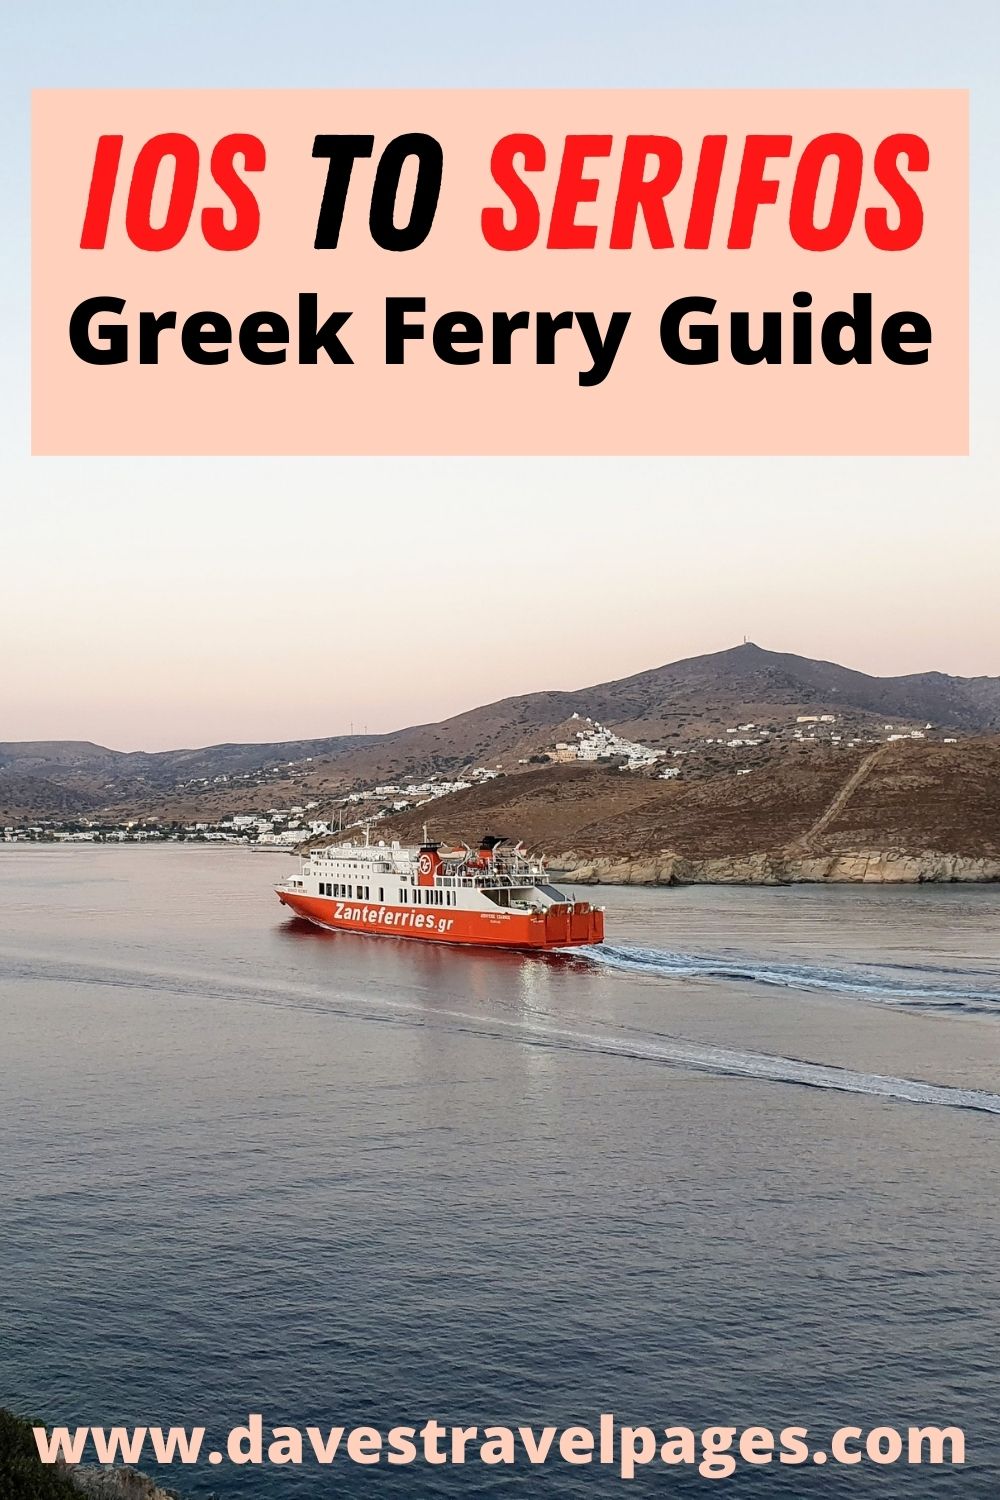 מדריך מעבורת איוס לסריפוס